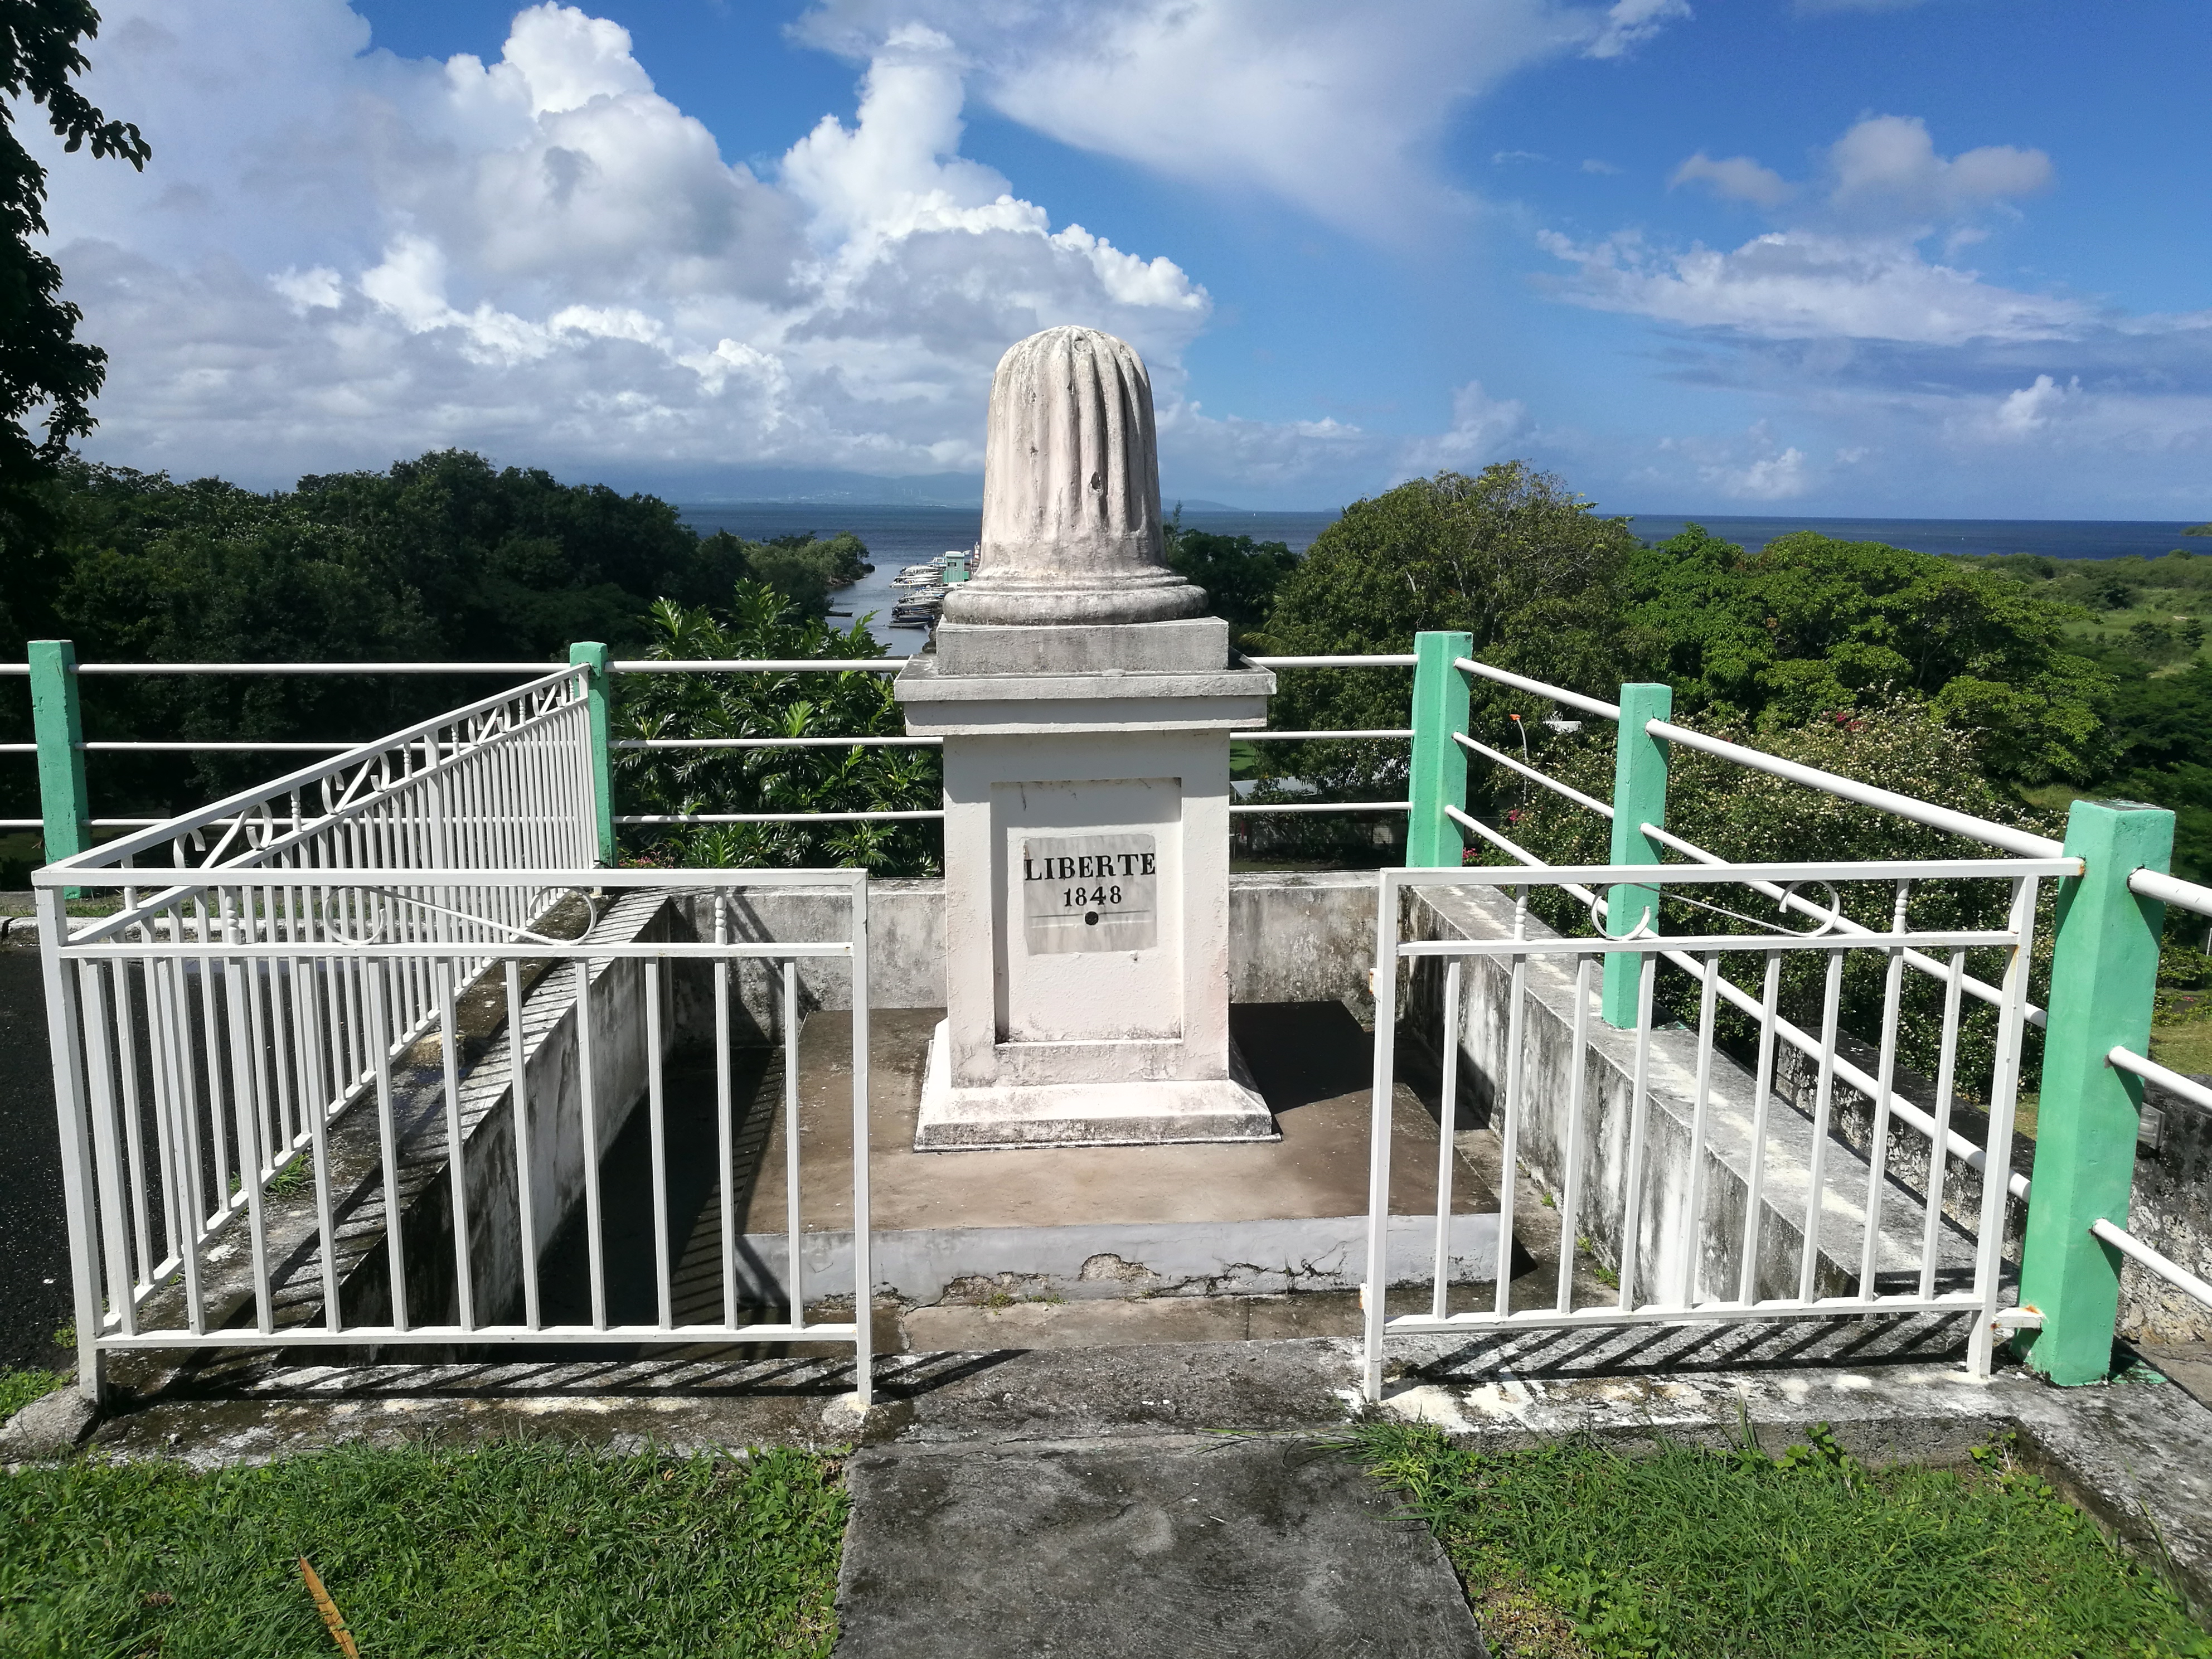 Le Monument à l’abolition de l’esclavage, ROUTE DE L’ESCLAVE Offer Le Monument à l’abolition de l’esclavage, ROUTE DE L’ESCLAVE